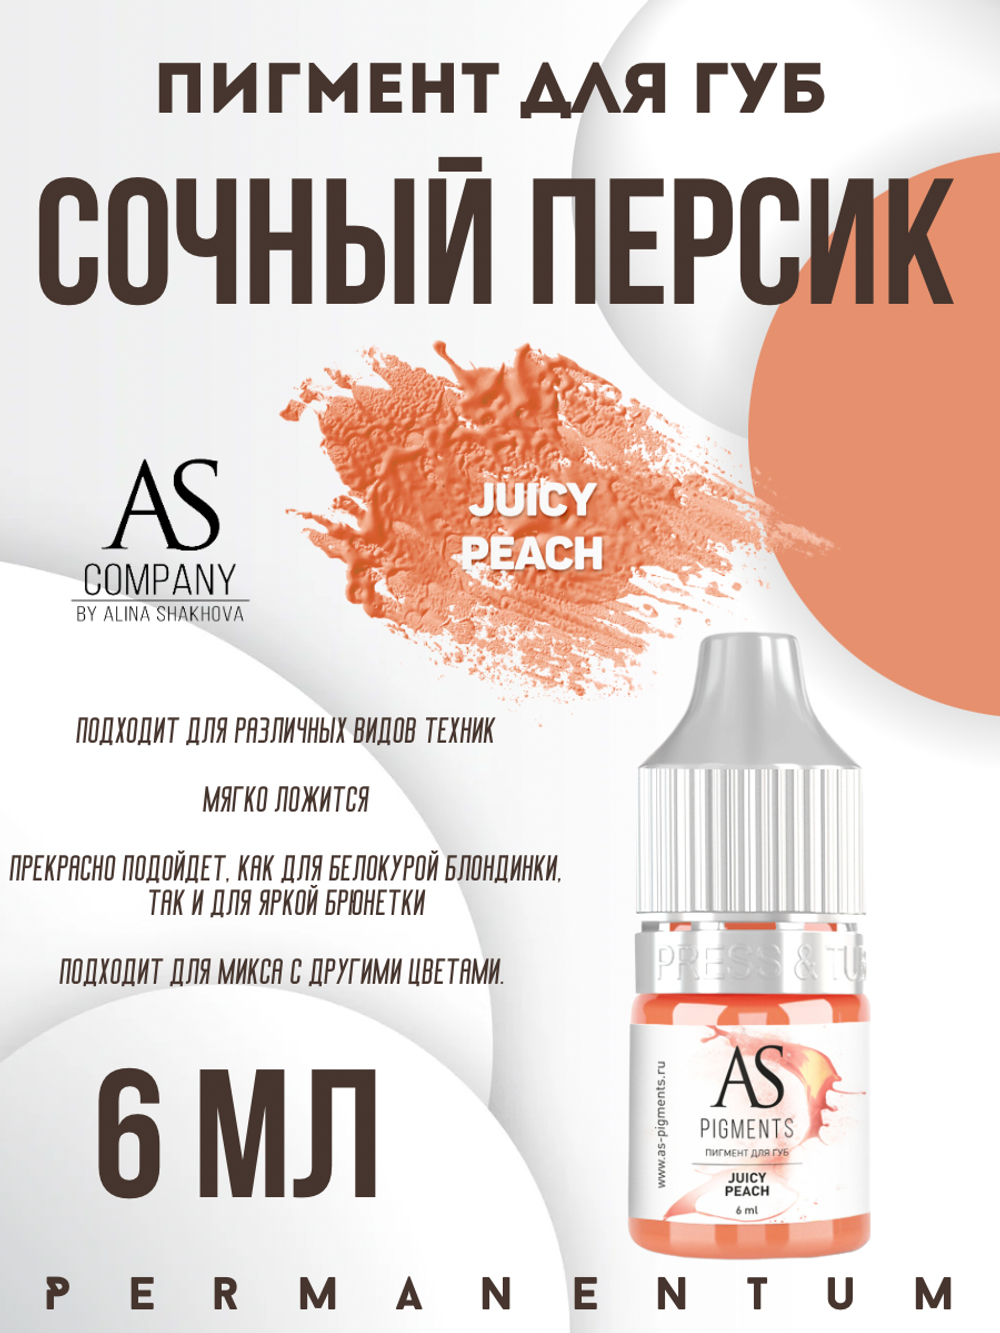 Пигмент для губ Juicy peach (Сочный персик) от Алины Шаховой